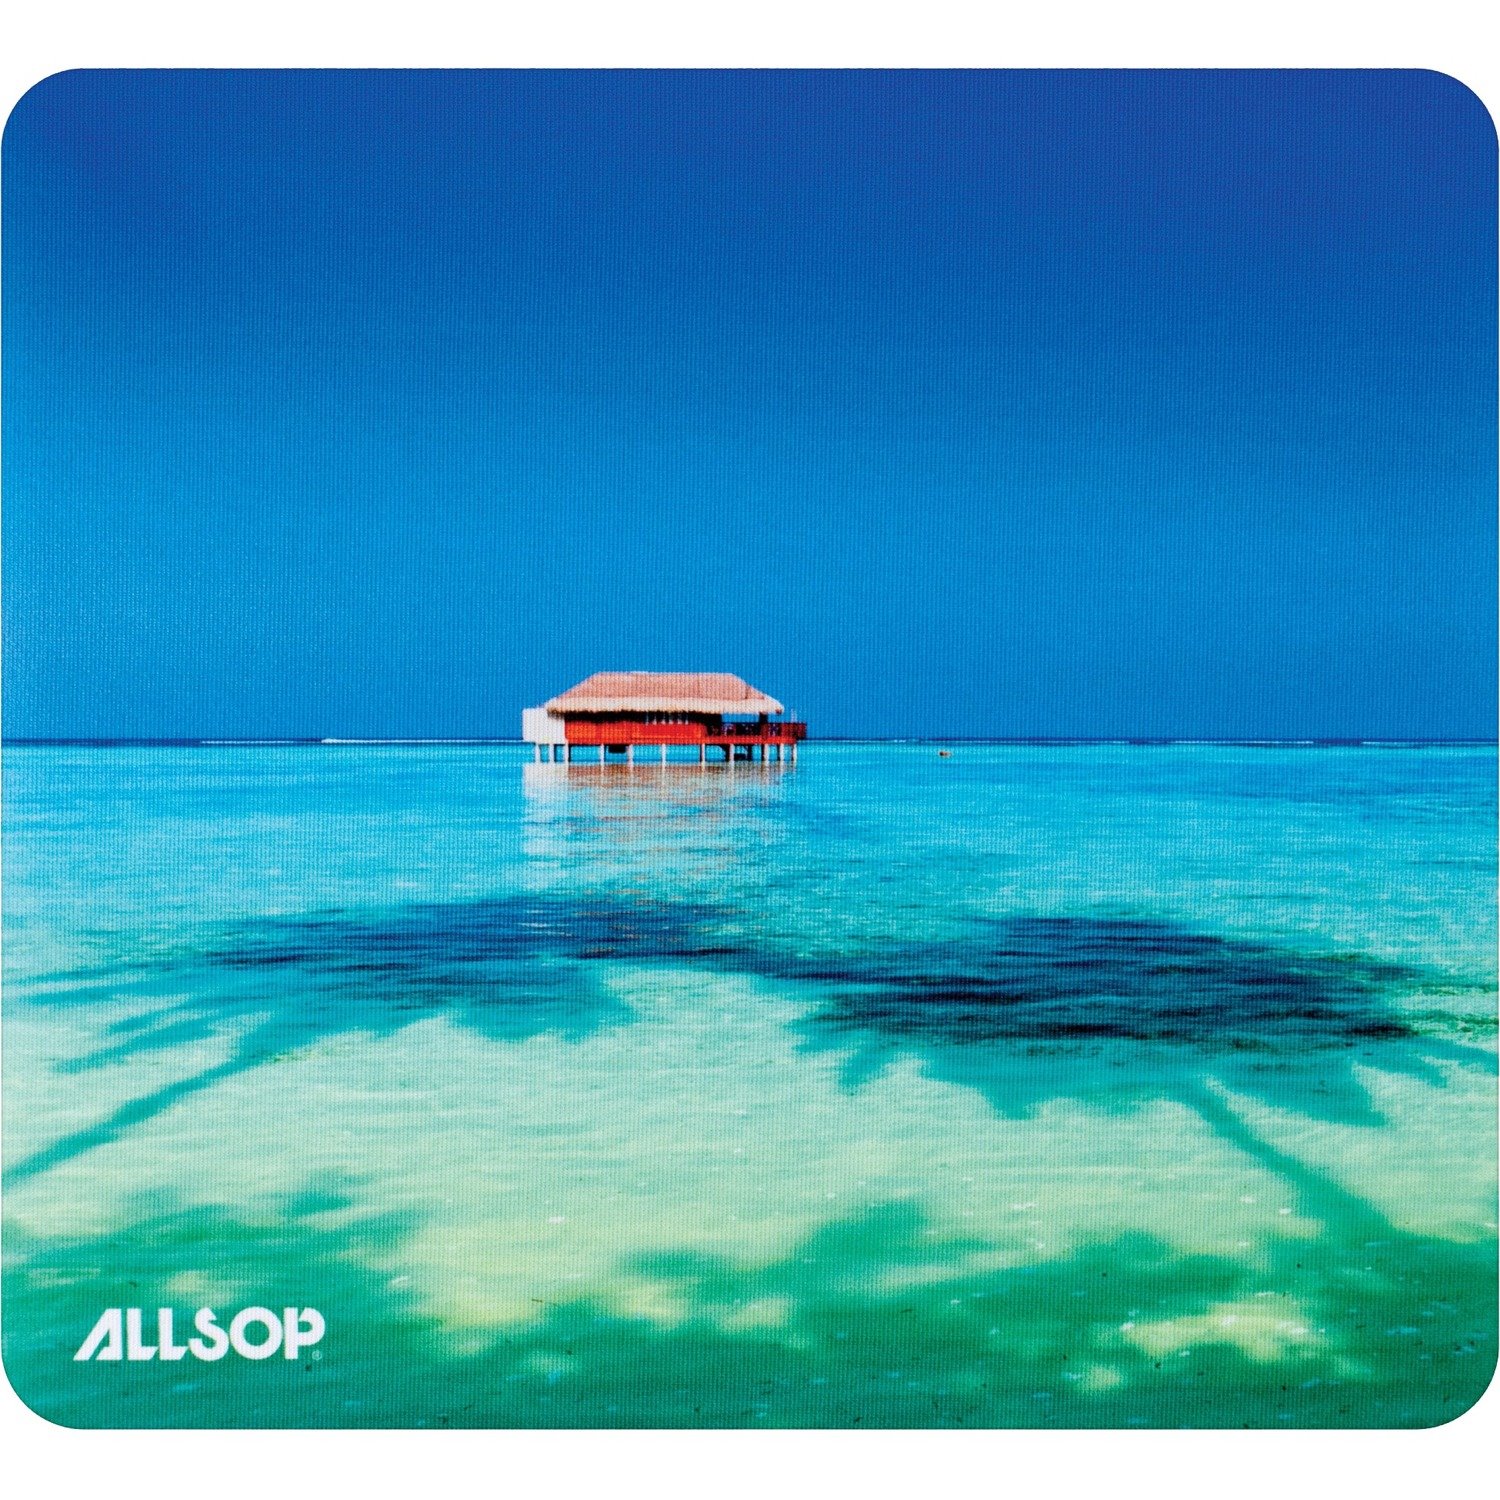 Allsop NatureSmart Image Mousepad - Tropical Maldives - (31625)